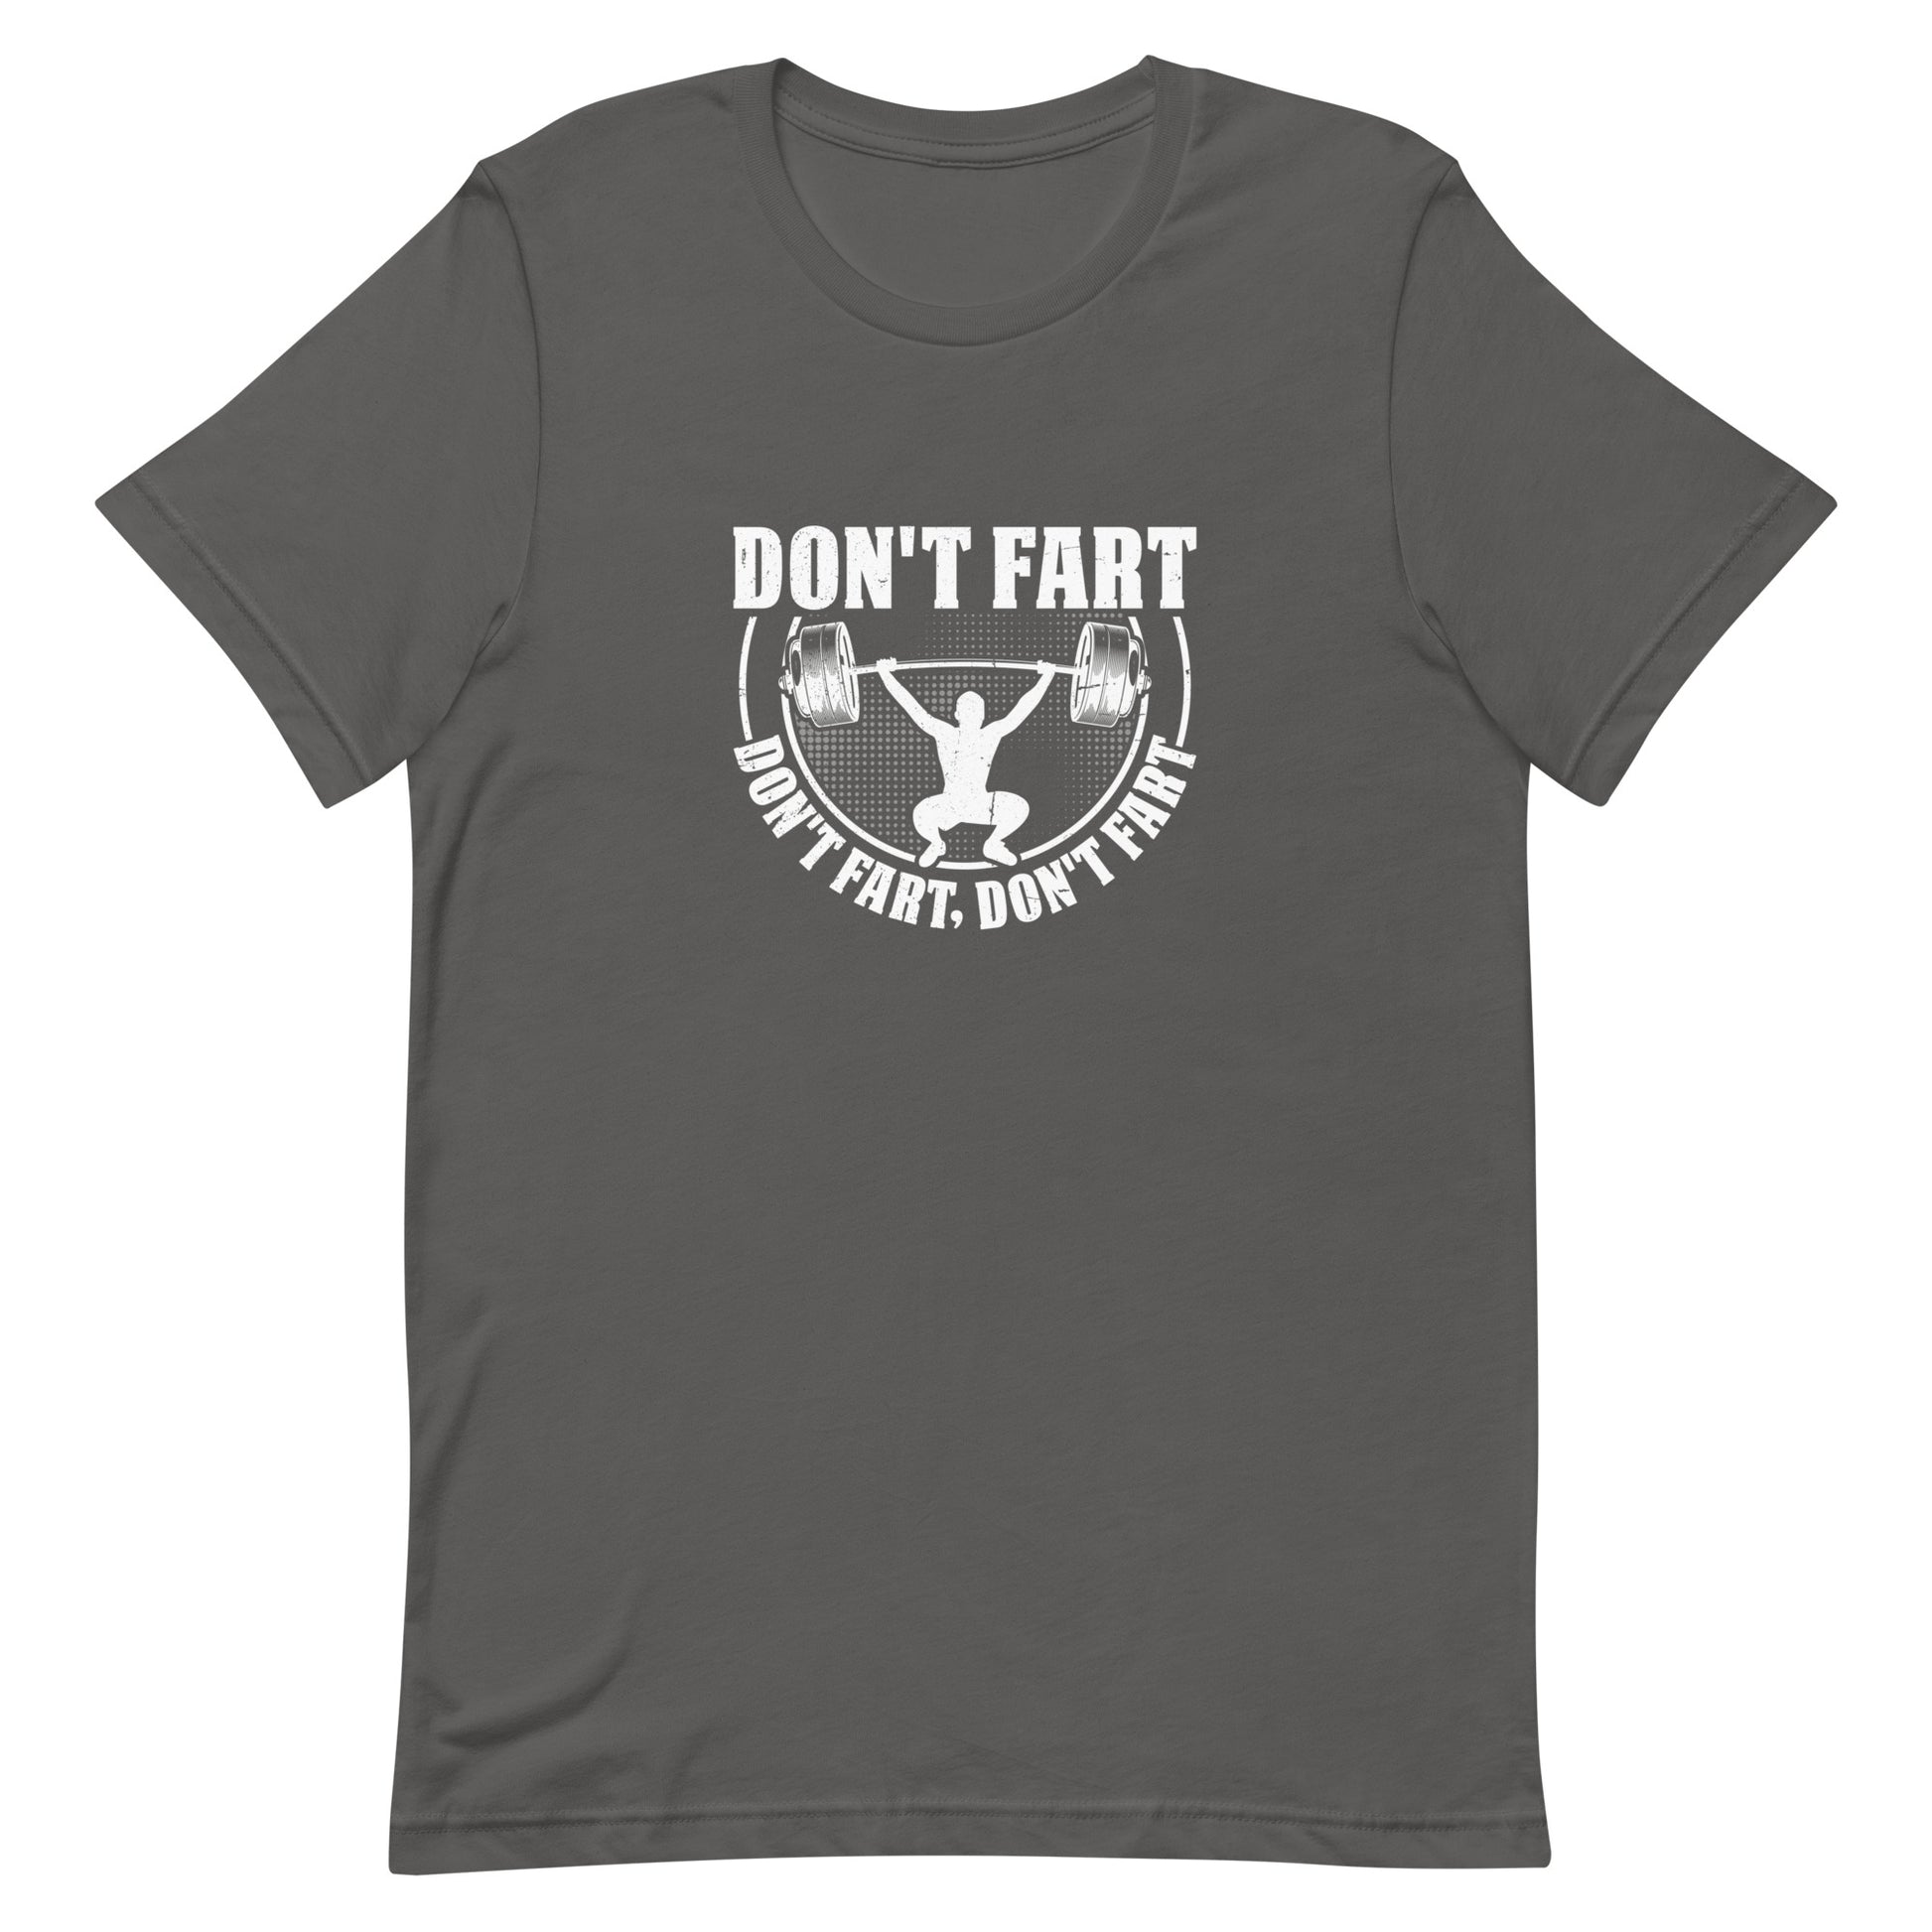 Don't Fart Don't Fart Don't Fart Unisex T-shirt